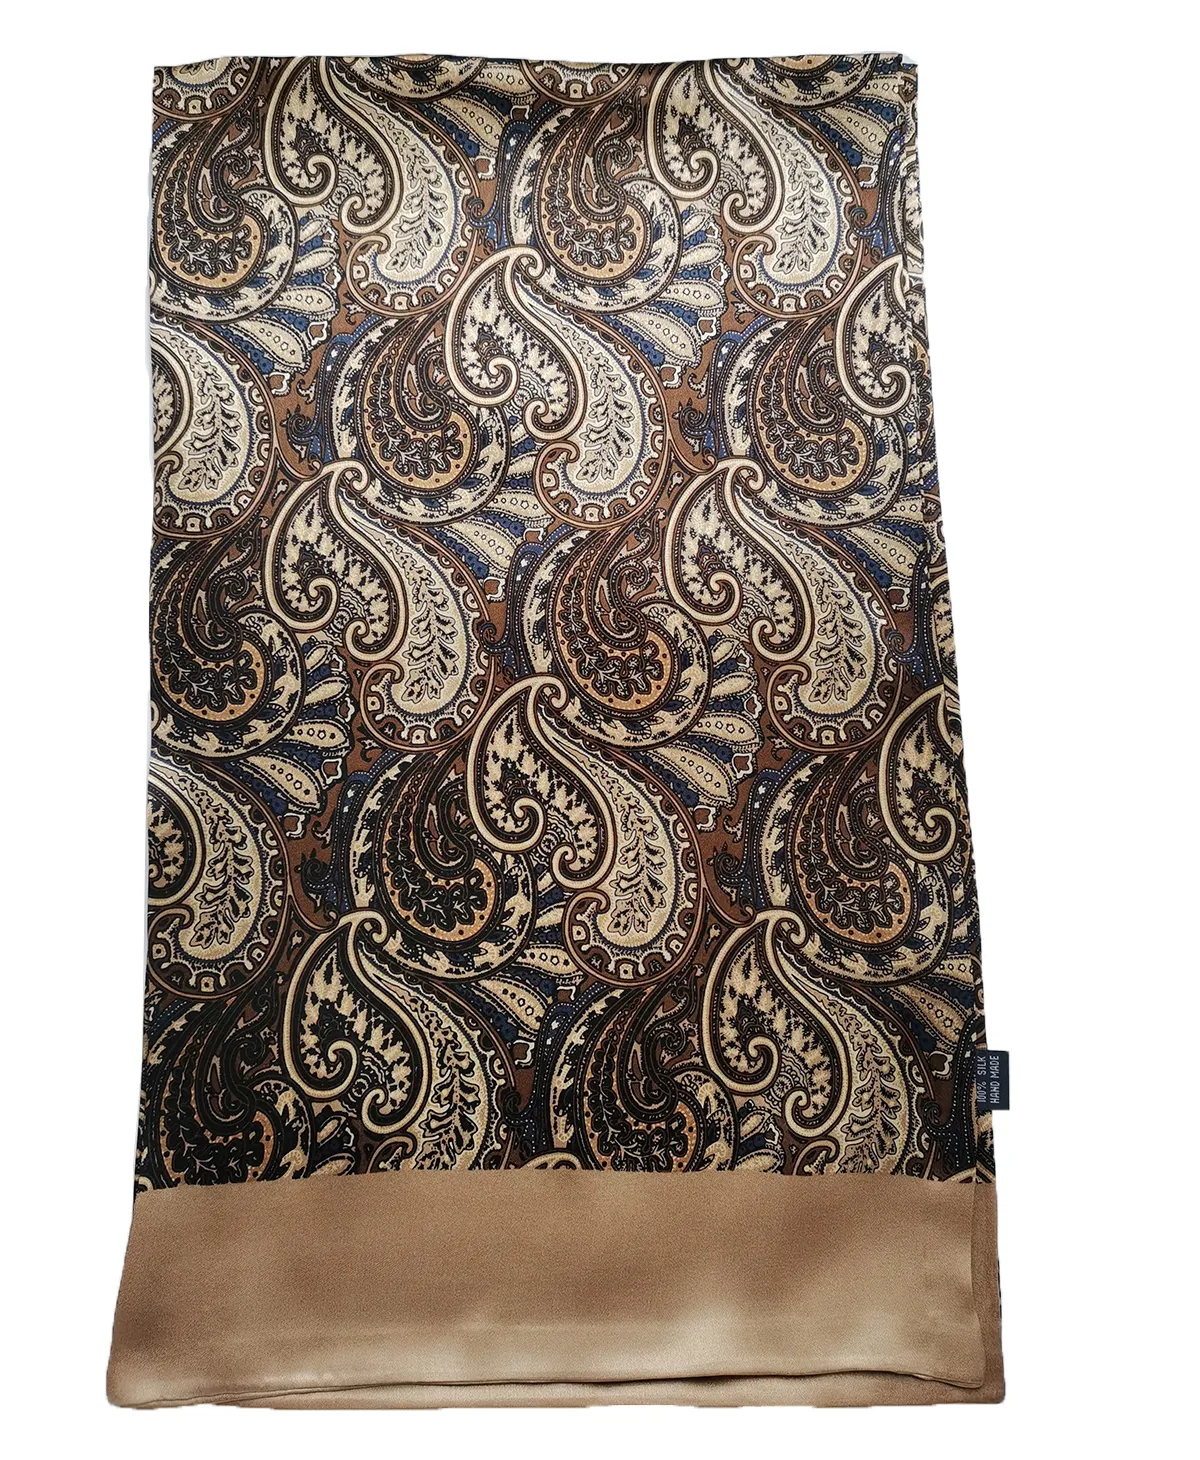 Мужской длинный шарф, шейный платок 100, шелковый, коричневый, с двойным узором пейсли, 170x27 см